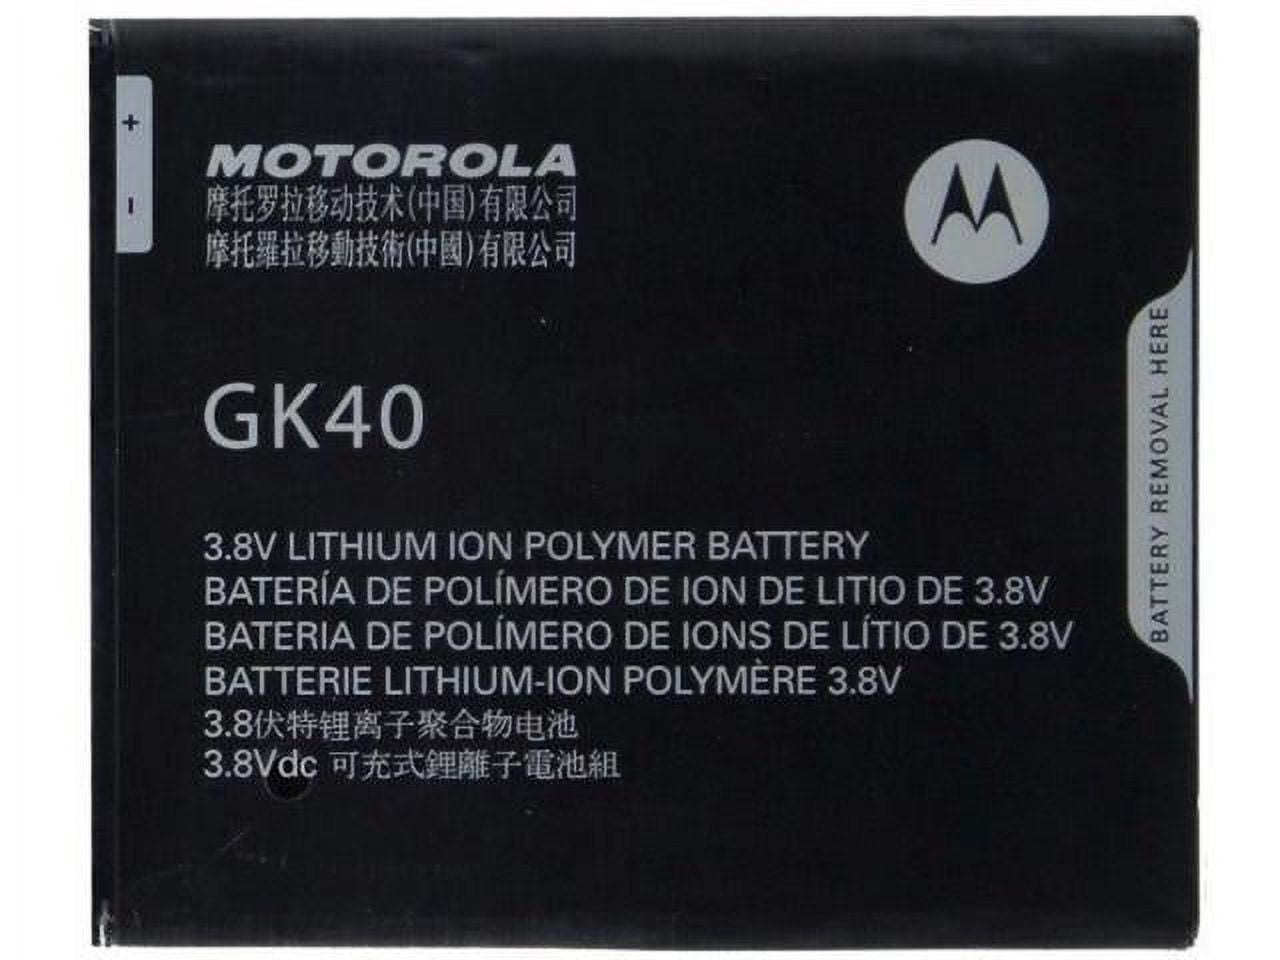 BATTERY MOTOROLA GK40 Moto G4 Play, G5, E3 2800mAh